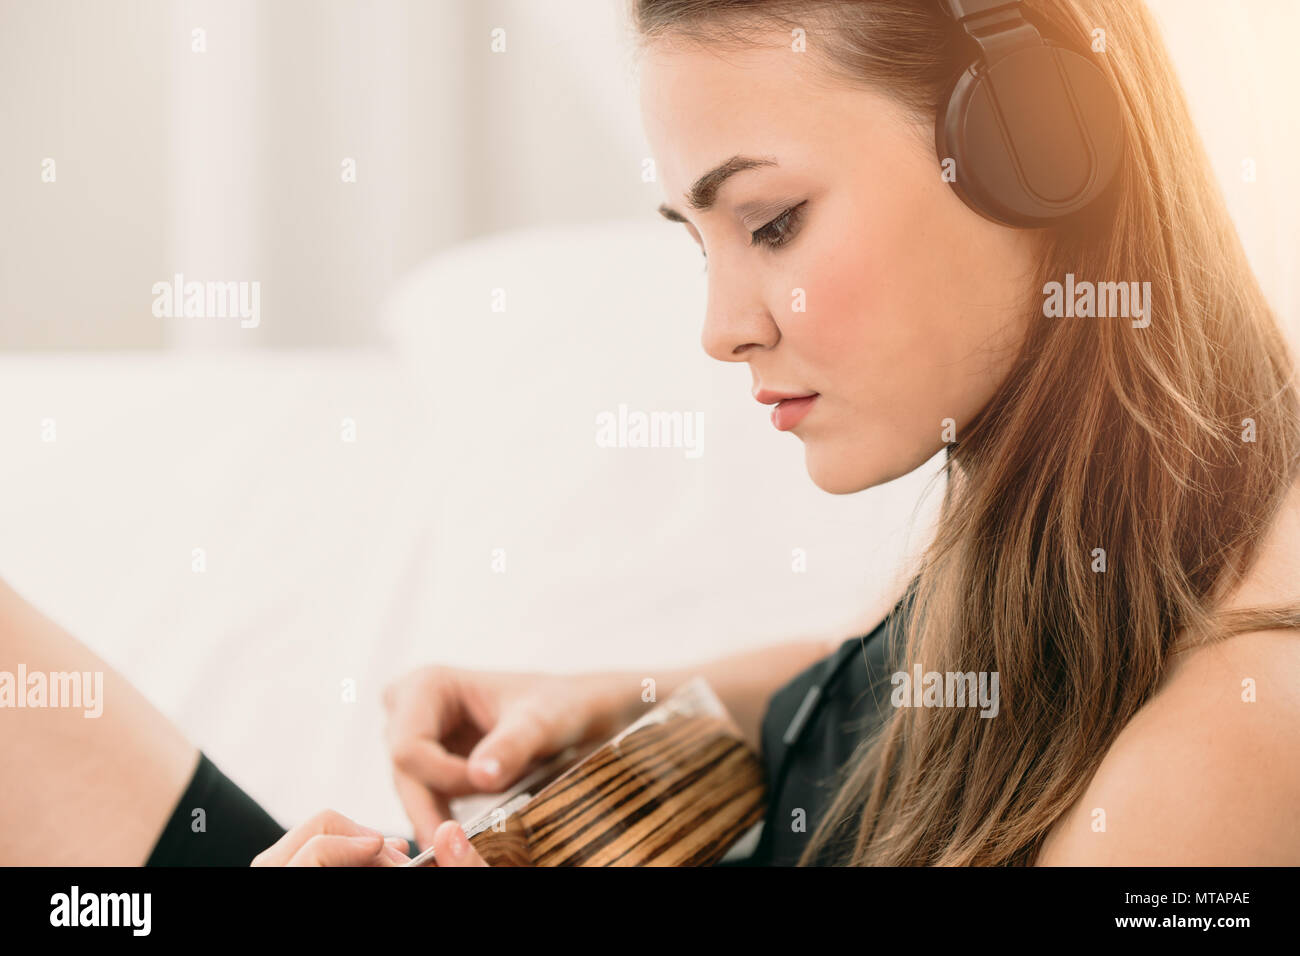 Frau Gitarre spielen und Musik hören wollen zu üben ihr Lied komponieren Stockfoto